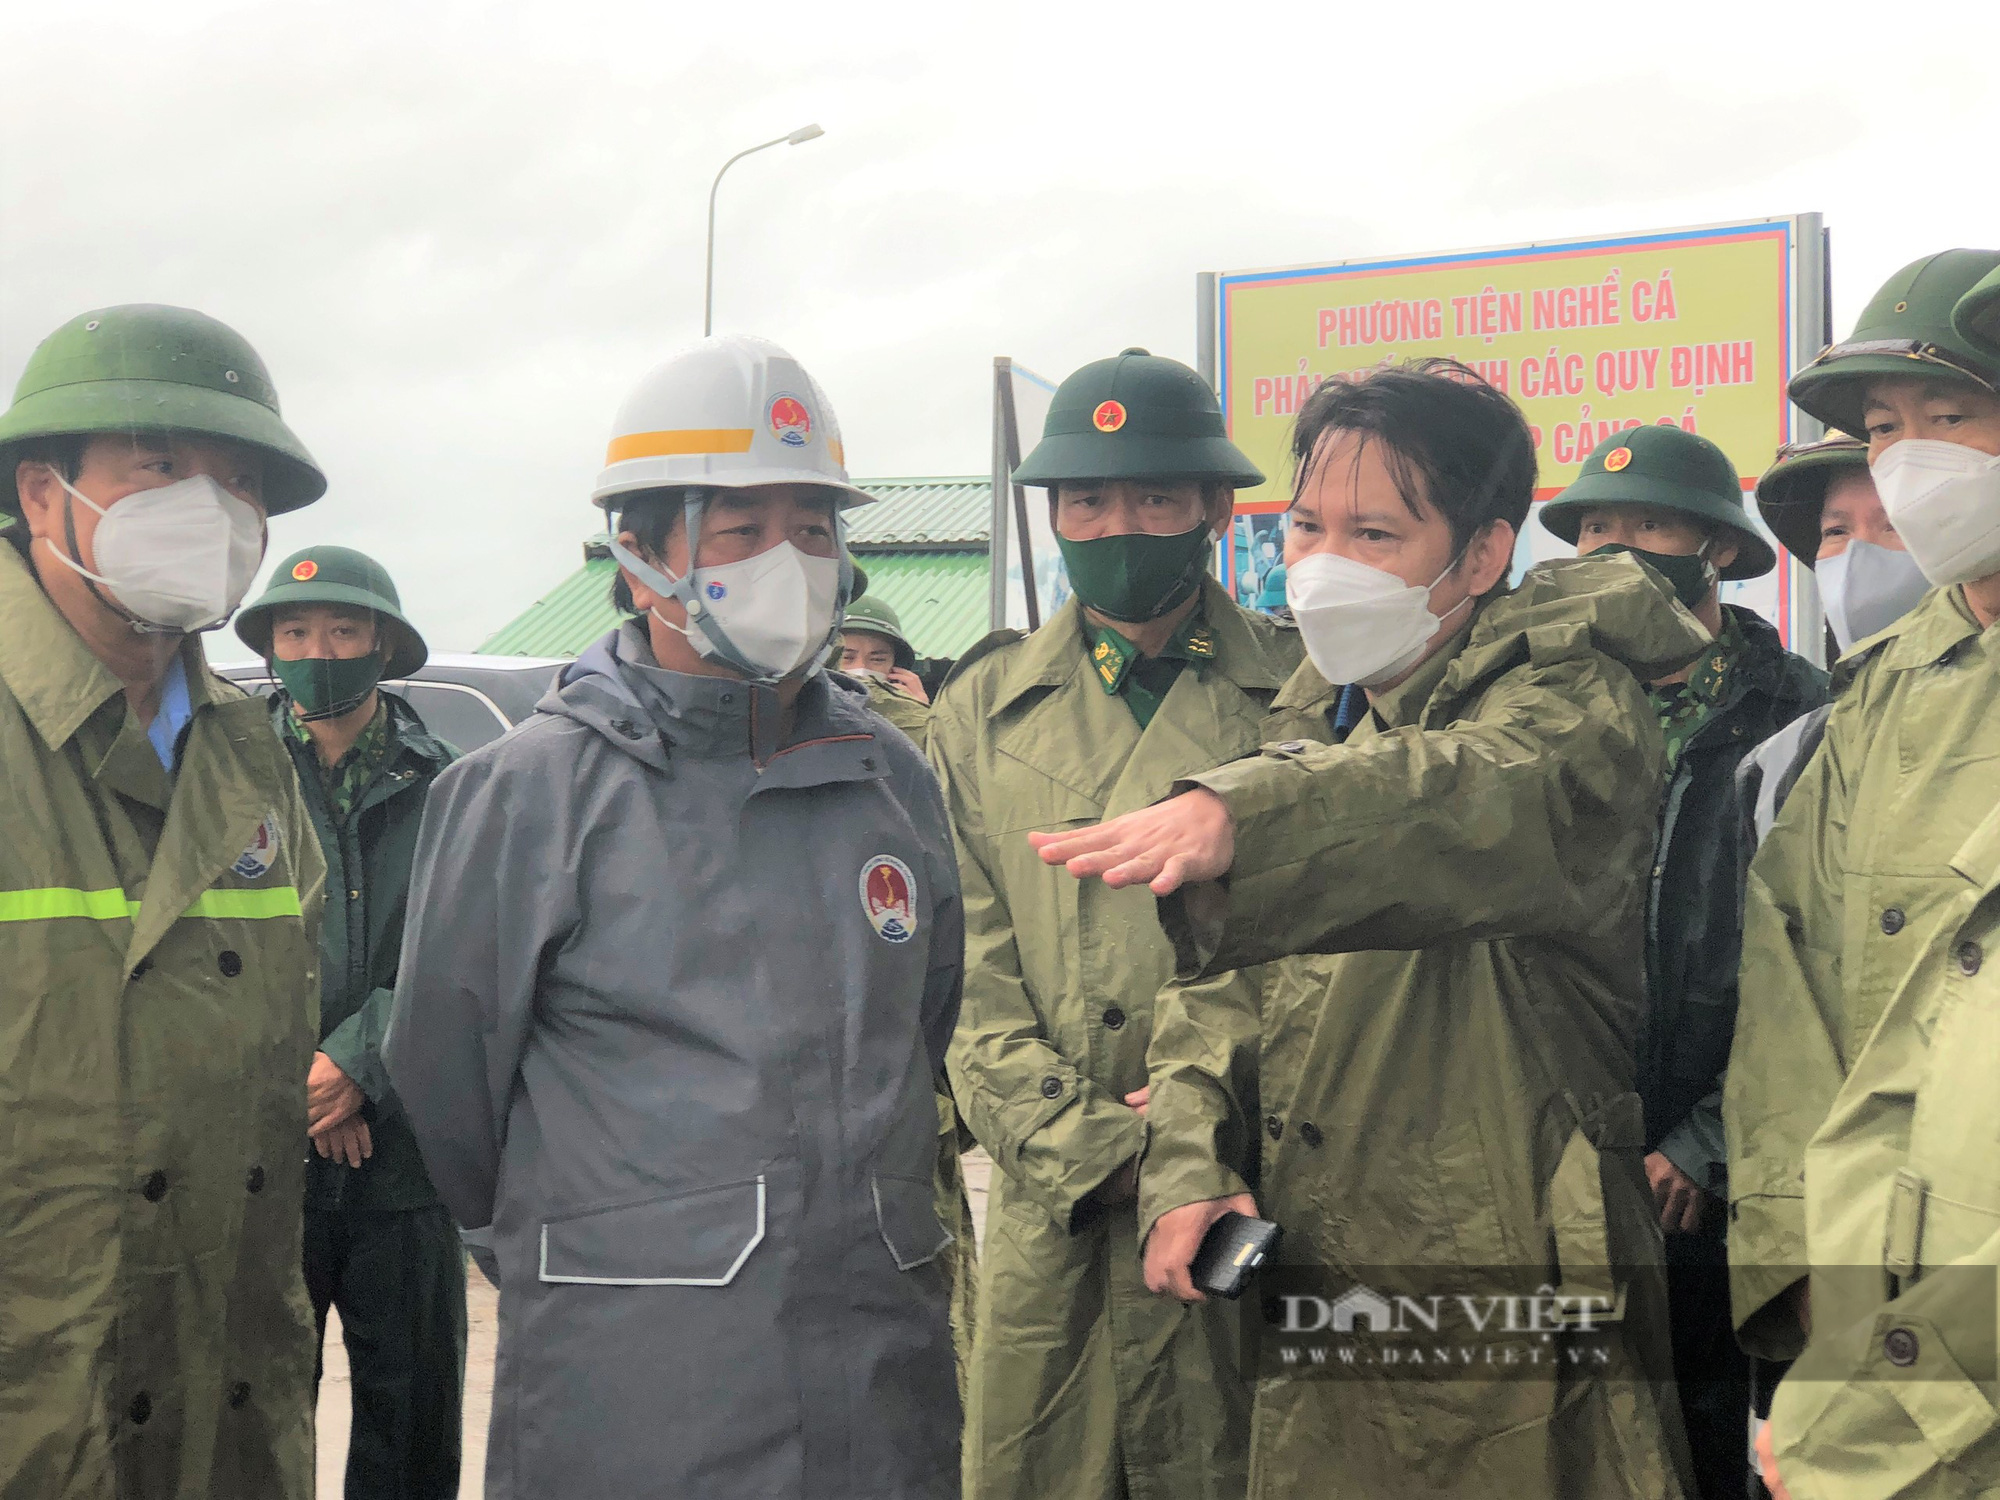 Hà Tĩnh: Bộ trưởng Lê Minh Hoan, đề nghị ứng phó bão số 8 chặt chẽ, thông báo để người dân không chủ quan - Ảnh 3.